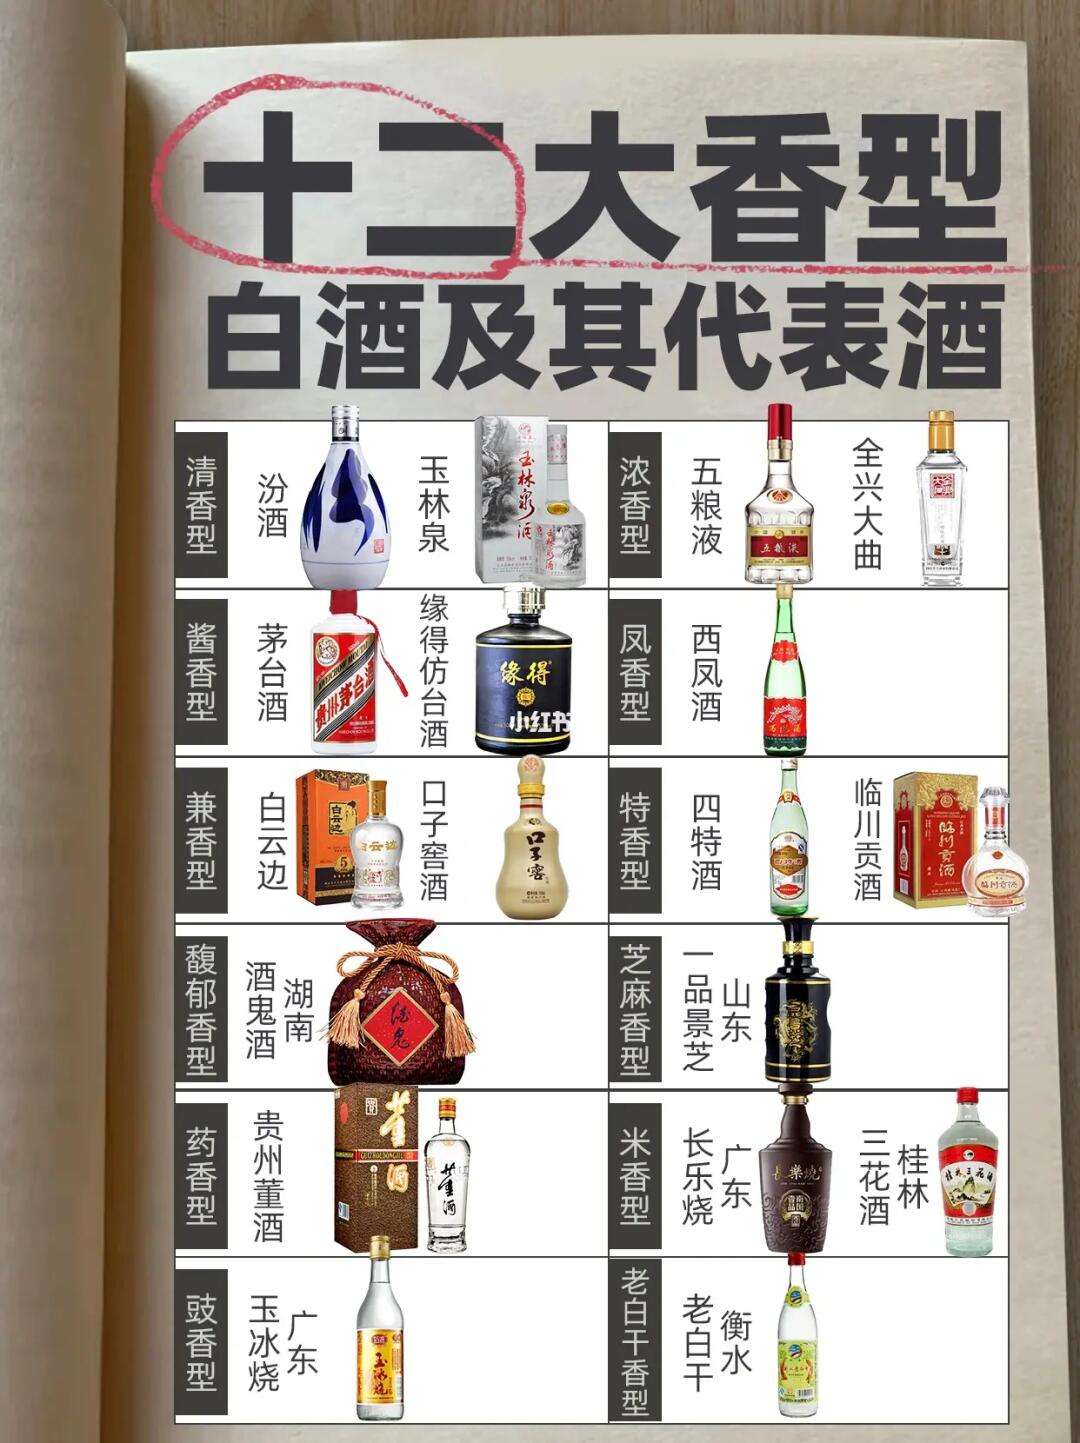 中国八大名酒简介 中国八大名酒的排名